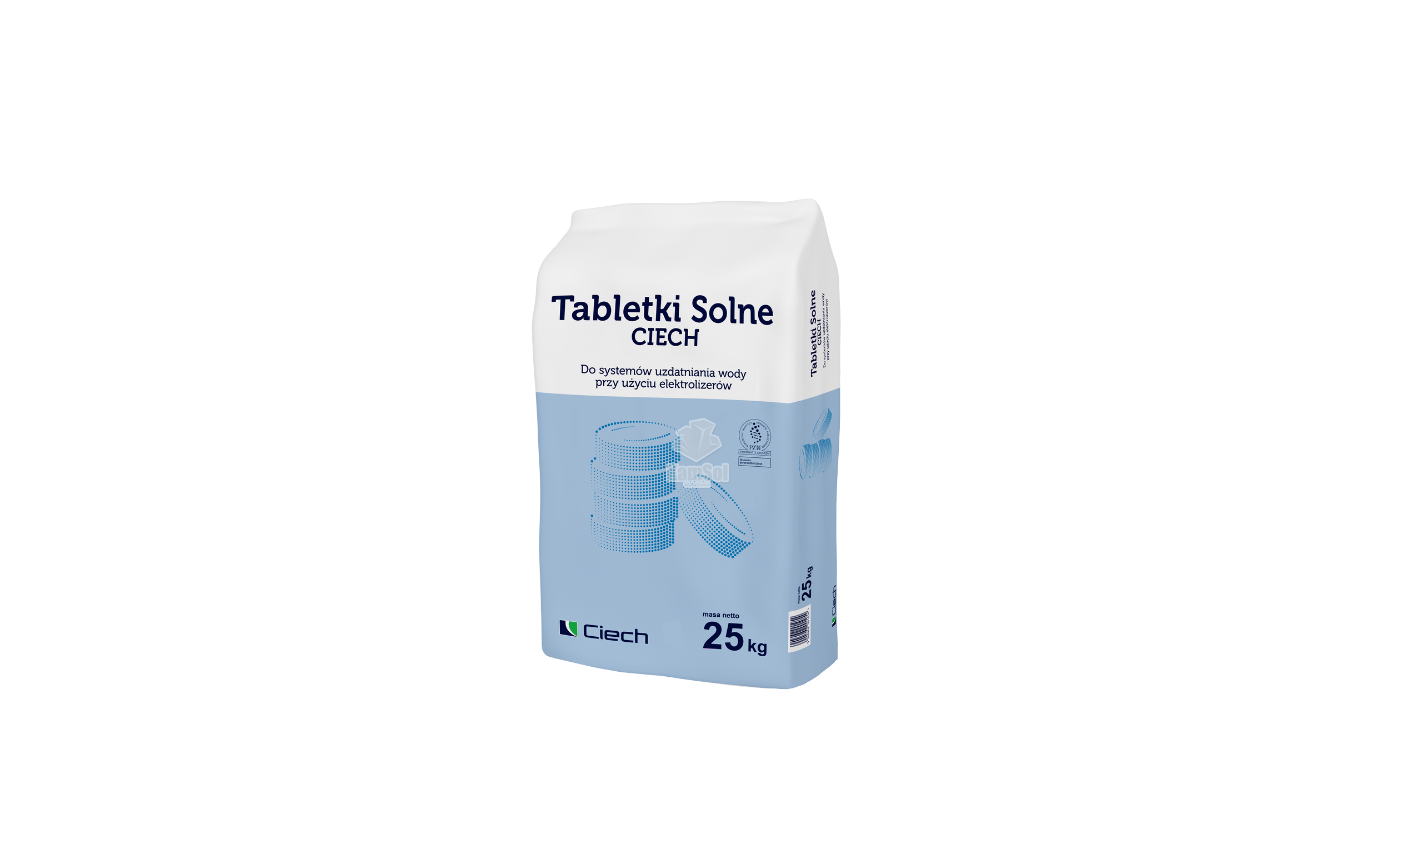 Kamsol poszerza portfolio produktów solnych o nowe tabletki solne CIECH do systemów uzdatniania wody przy użyciu elektrolizerów.